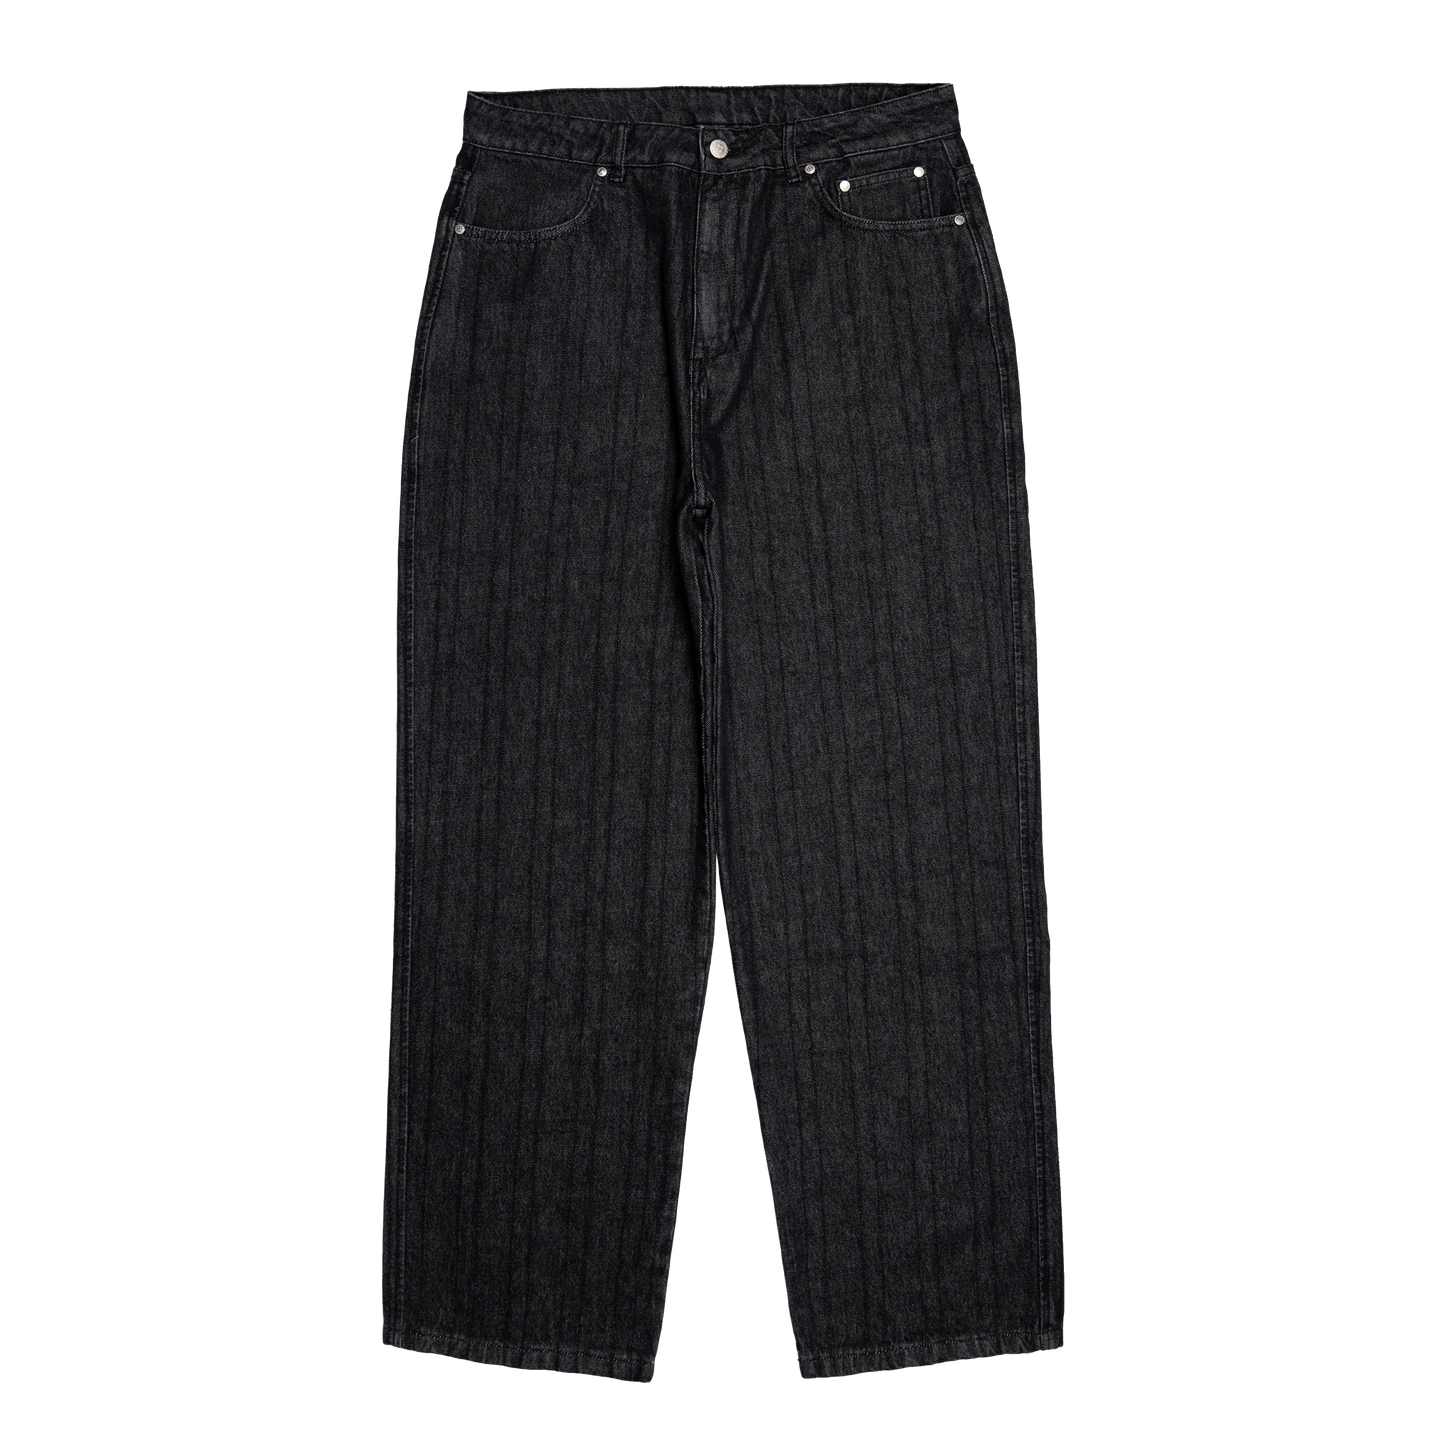 Outlined Denim Jeans [Black]